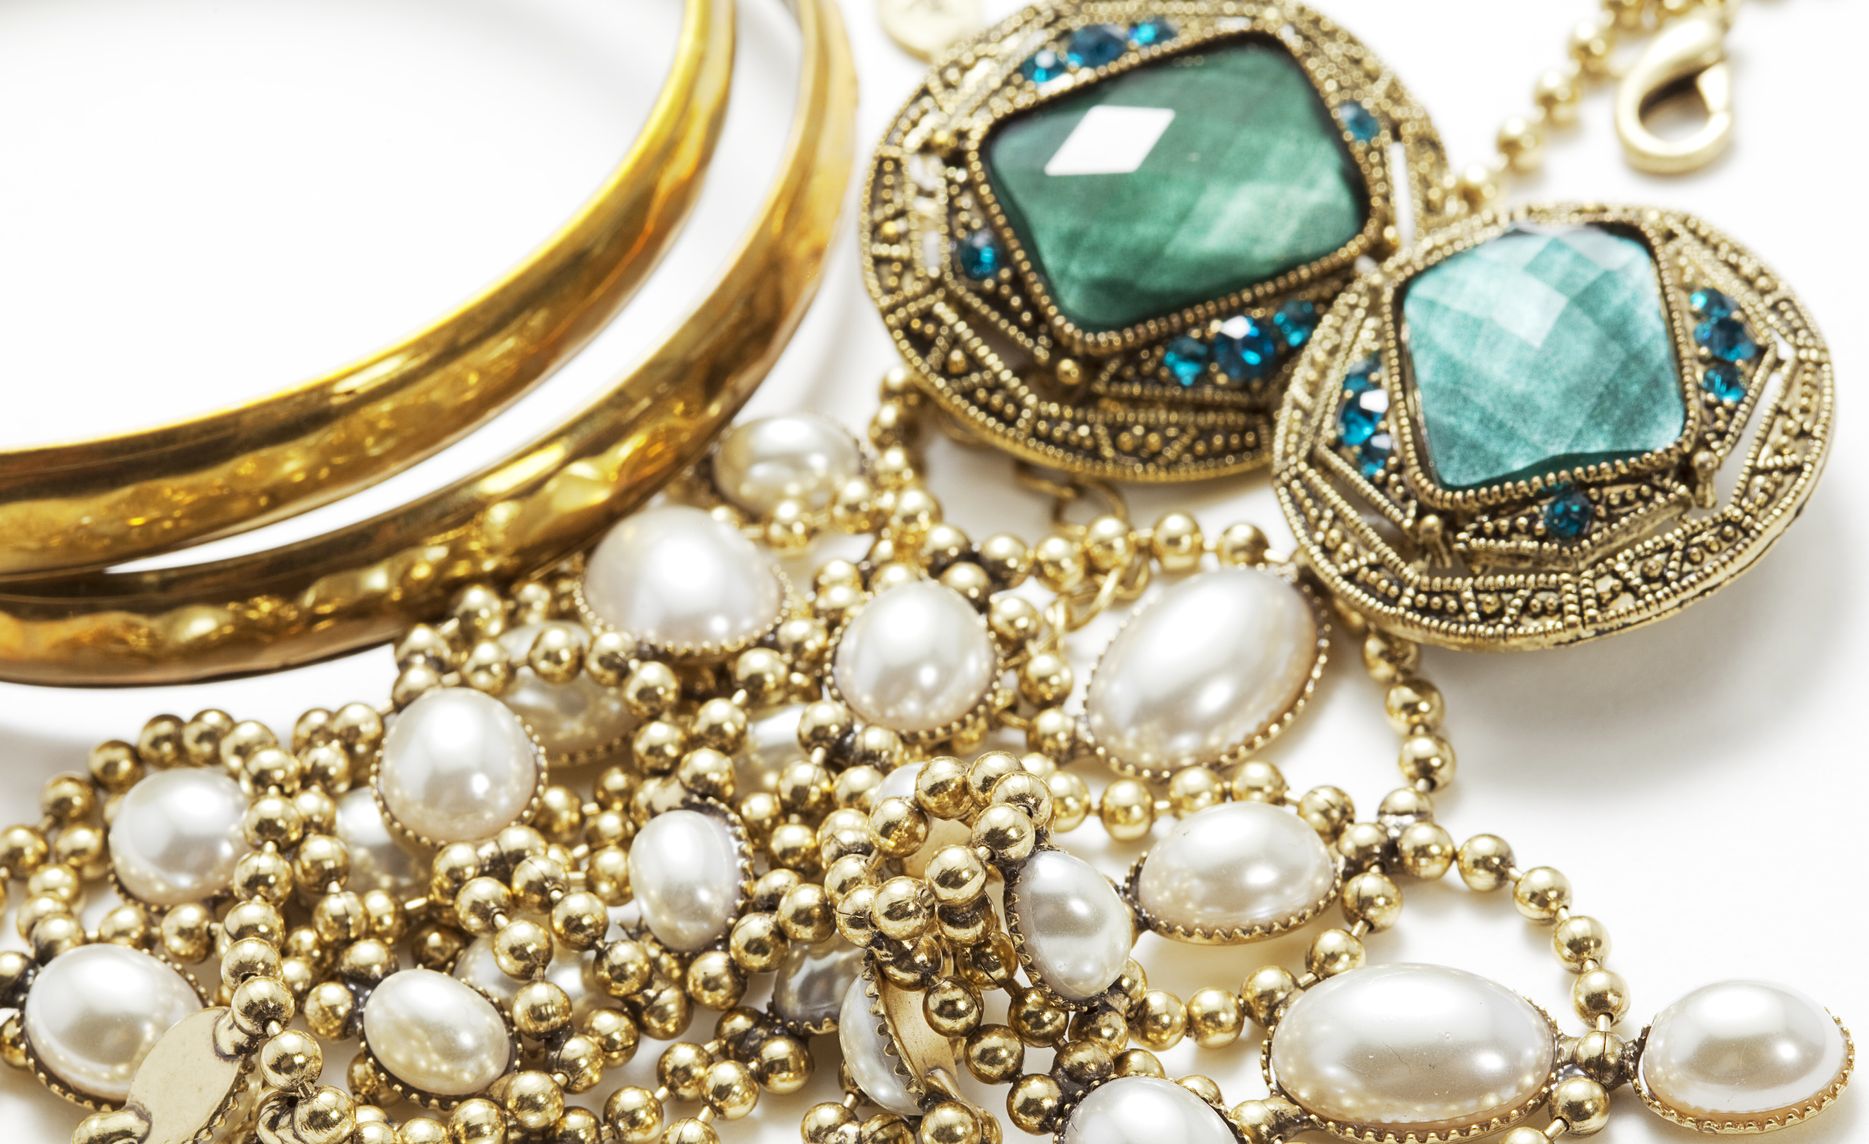 Understanding the Distinctions Between Vintage and Antique Jewellery